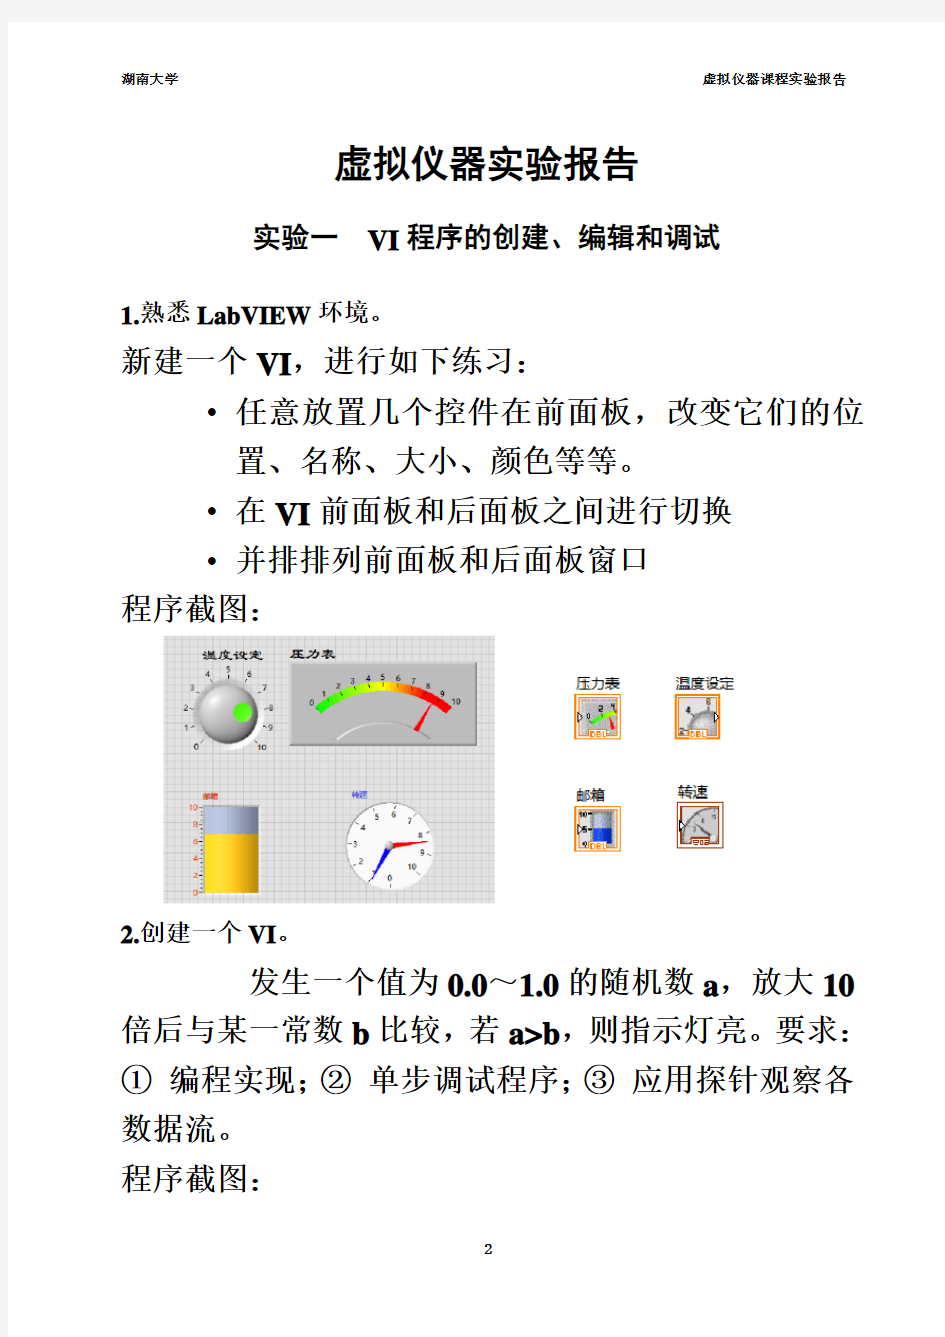 湖南大学测控技术与仪器《虚拟仪器》实验报告1-6